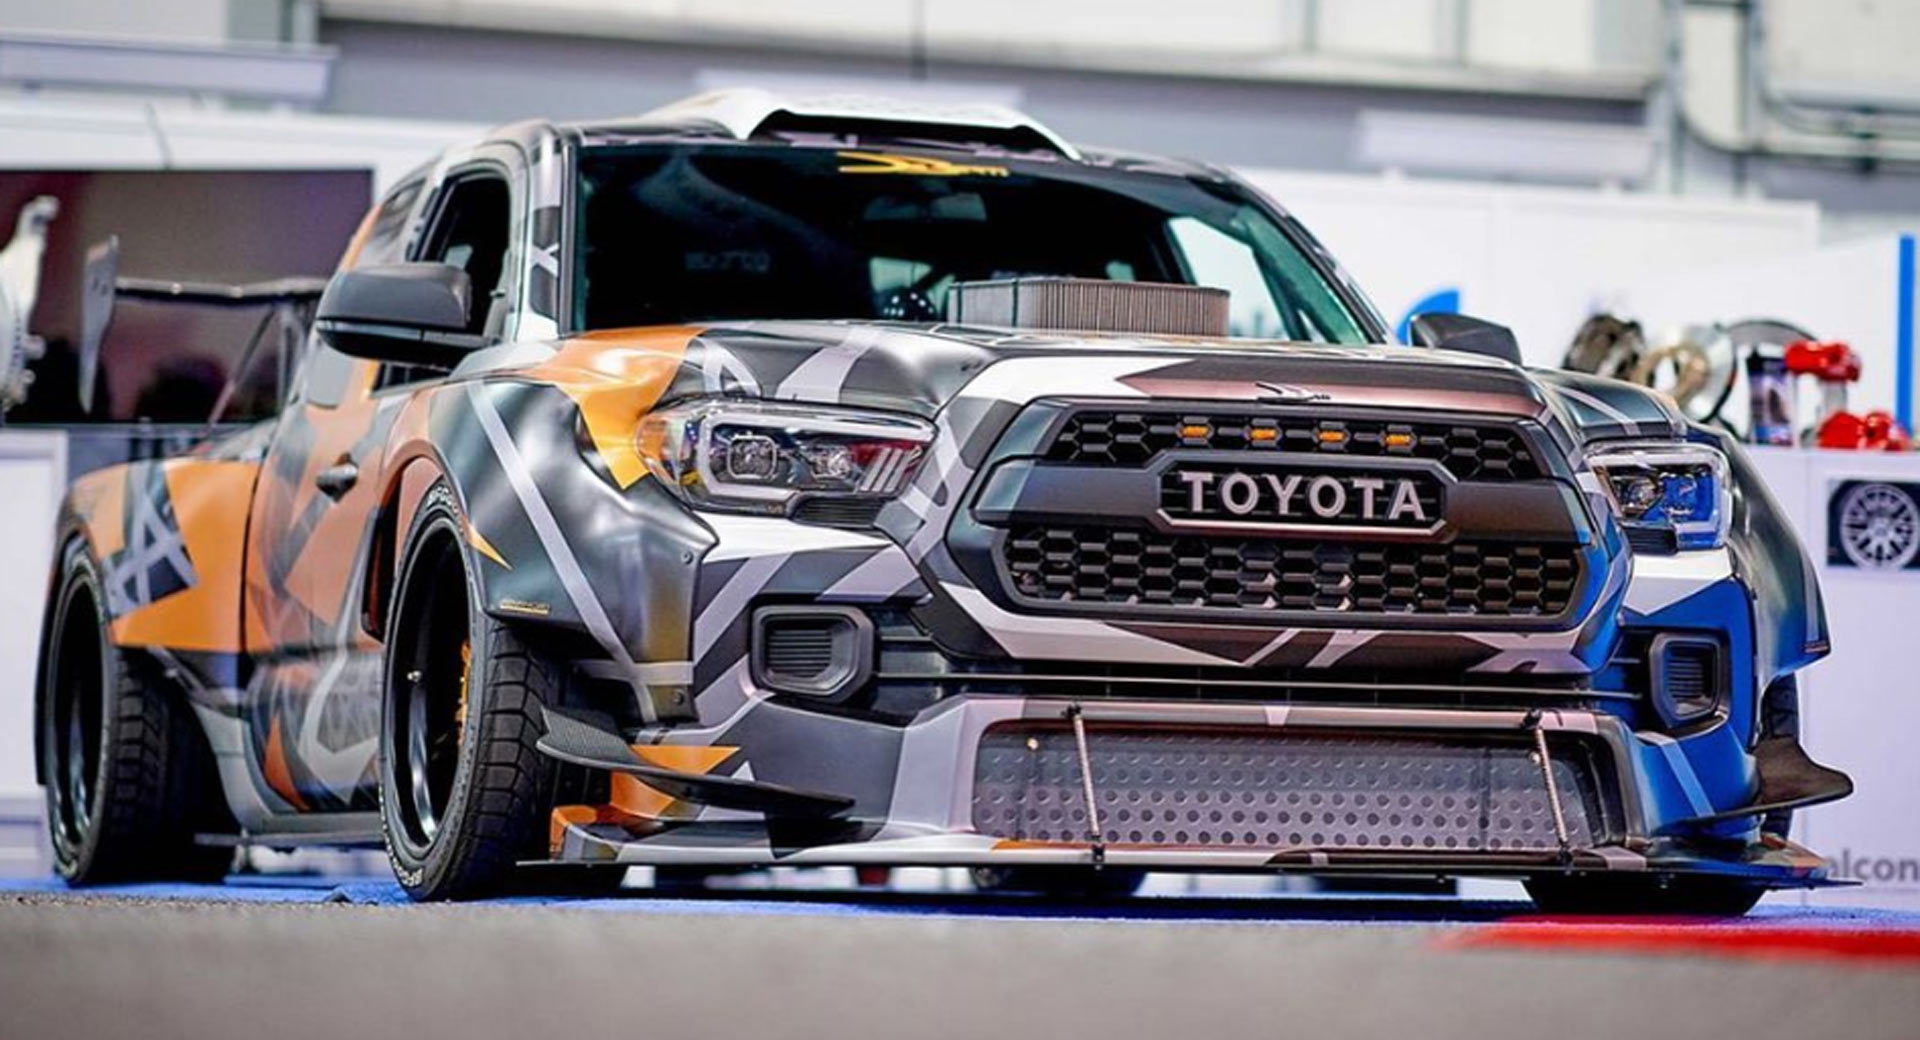 Bonkers Toyota Tacoma Drifter Has A 900 HP NASCAR V8 Engine